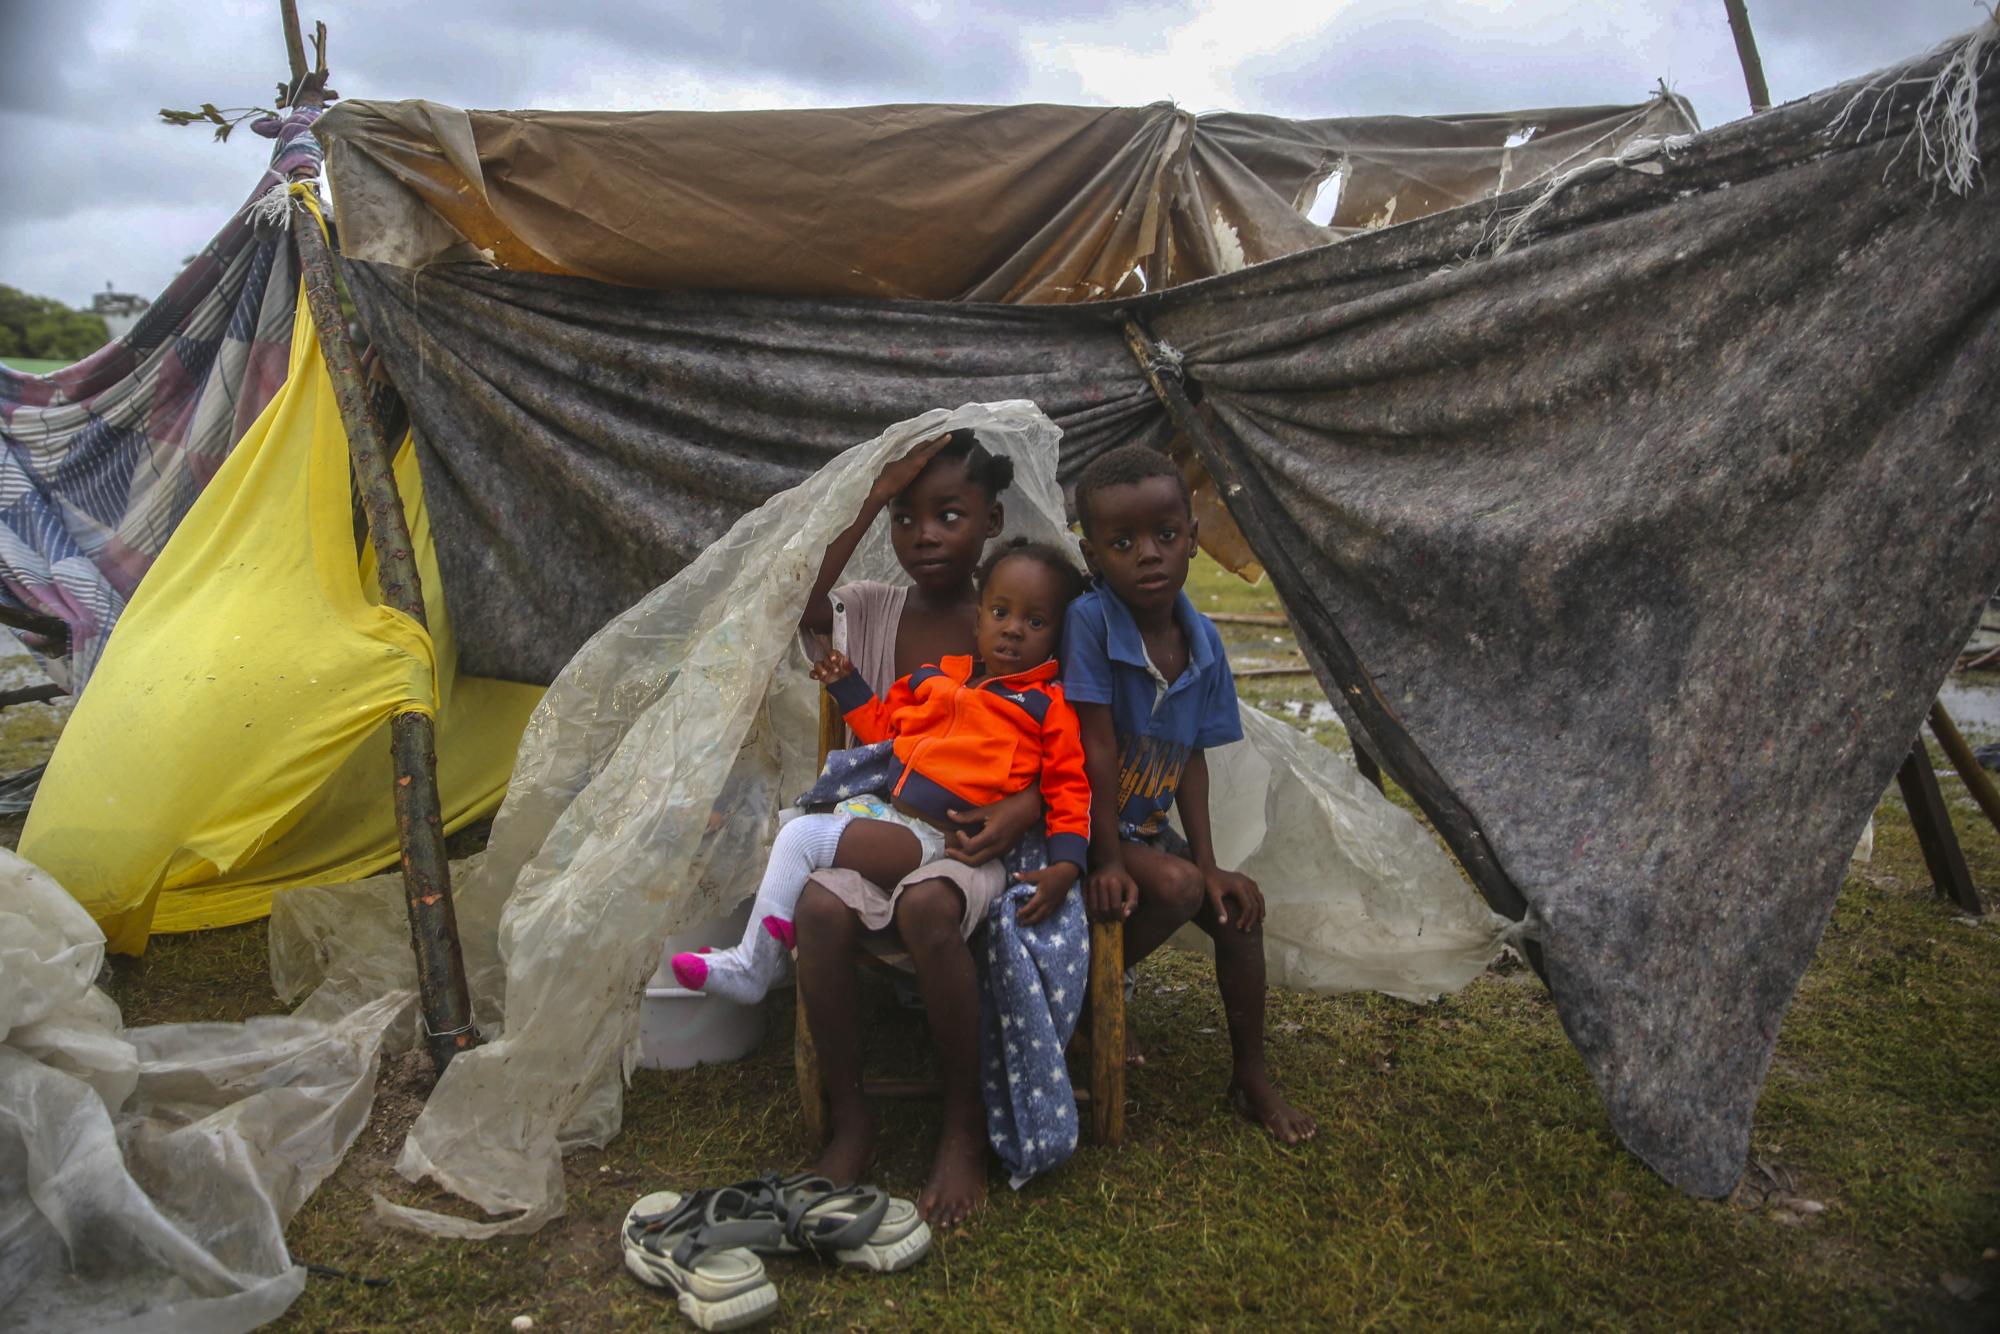 Los niños desplazados por el terremoto se apiñan debajo de una pieza de plástico la mañana después de que la tormenta tropical Grace barrió Les Cayes, Haití, el martes 17 de agosto de 2021, tres días después de un terremoto de magnitud 7.2. (Foto AP / Joseph Odelyn)